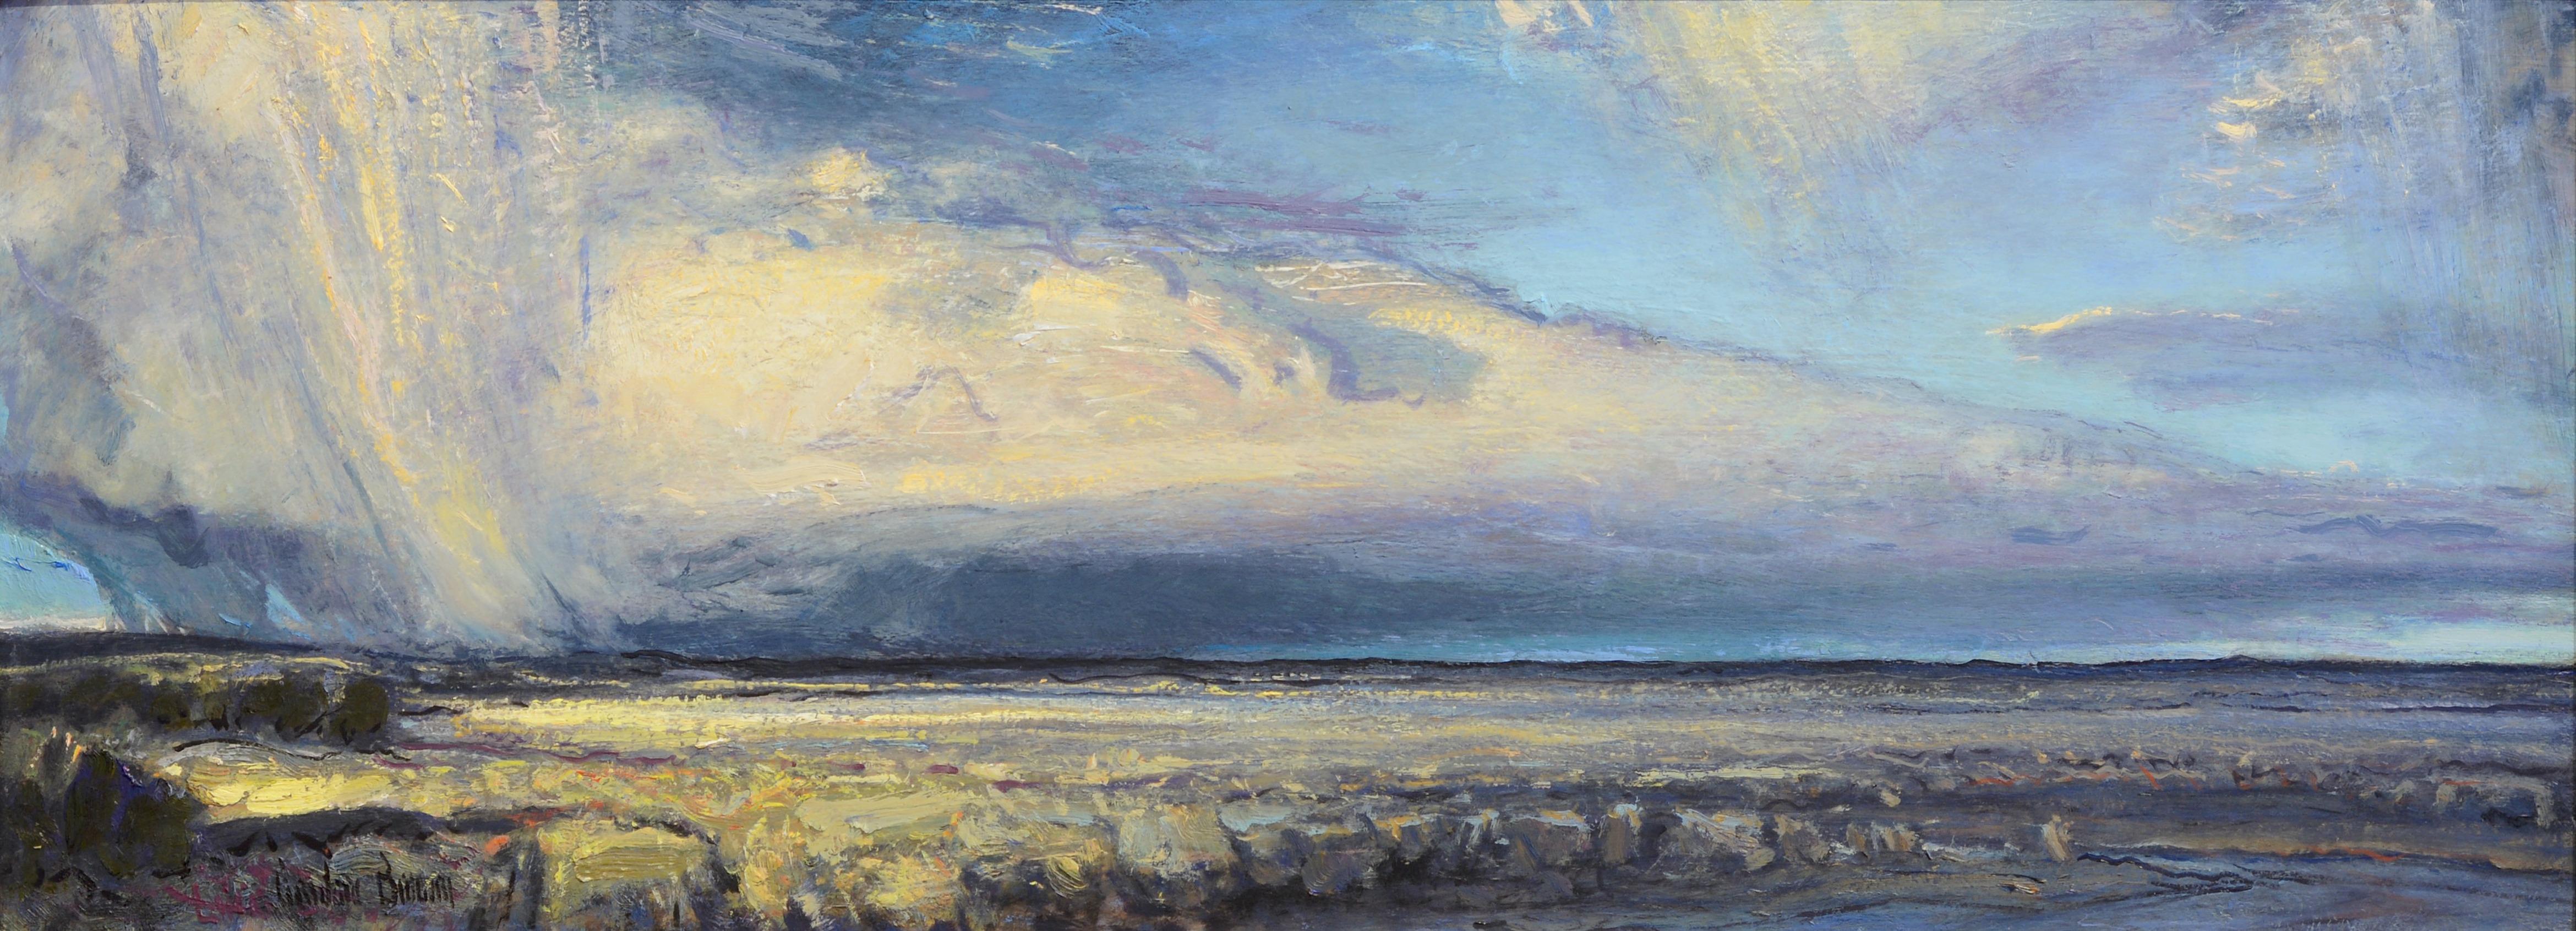 Gordon Brown Landscape Painting - Distant Rain, Oil Painting